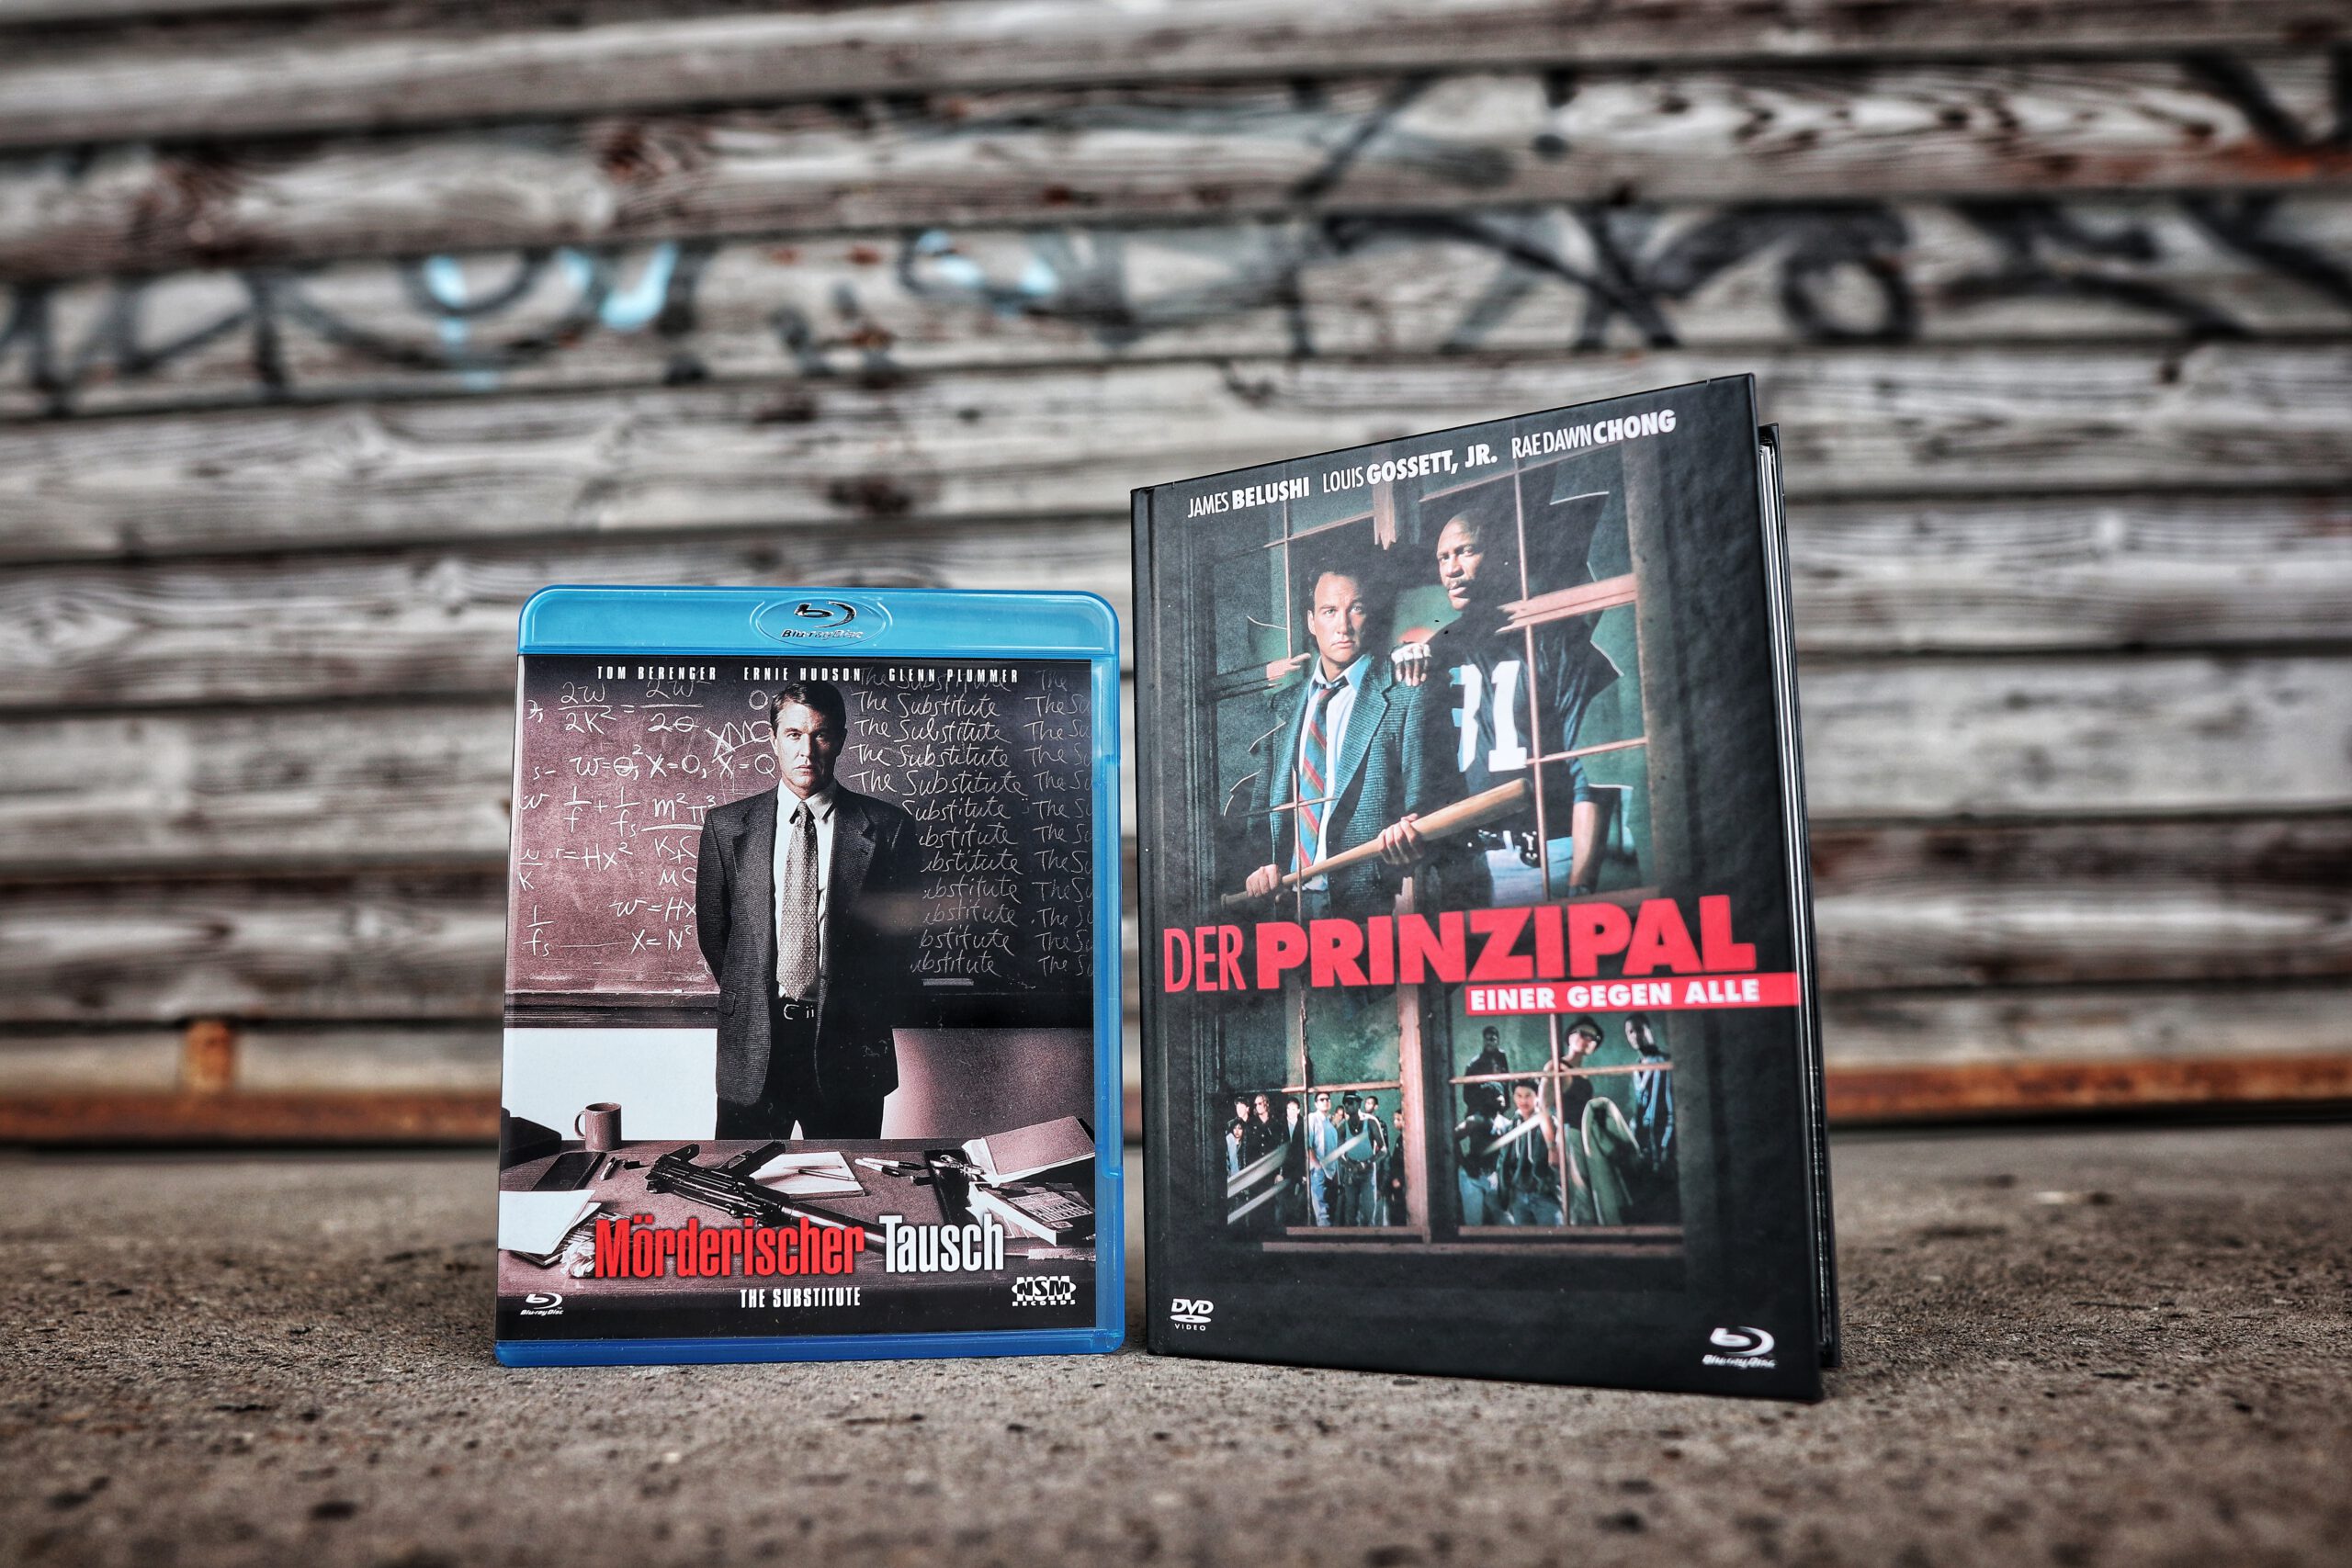 Der Prinzipal und Mörderischer Tausch Blu-Ray